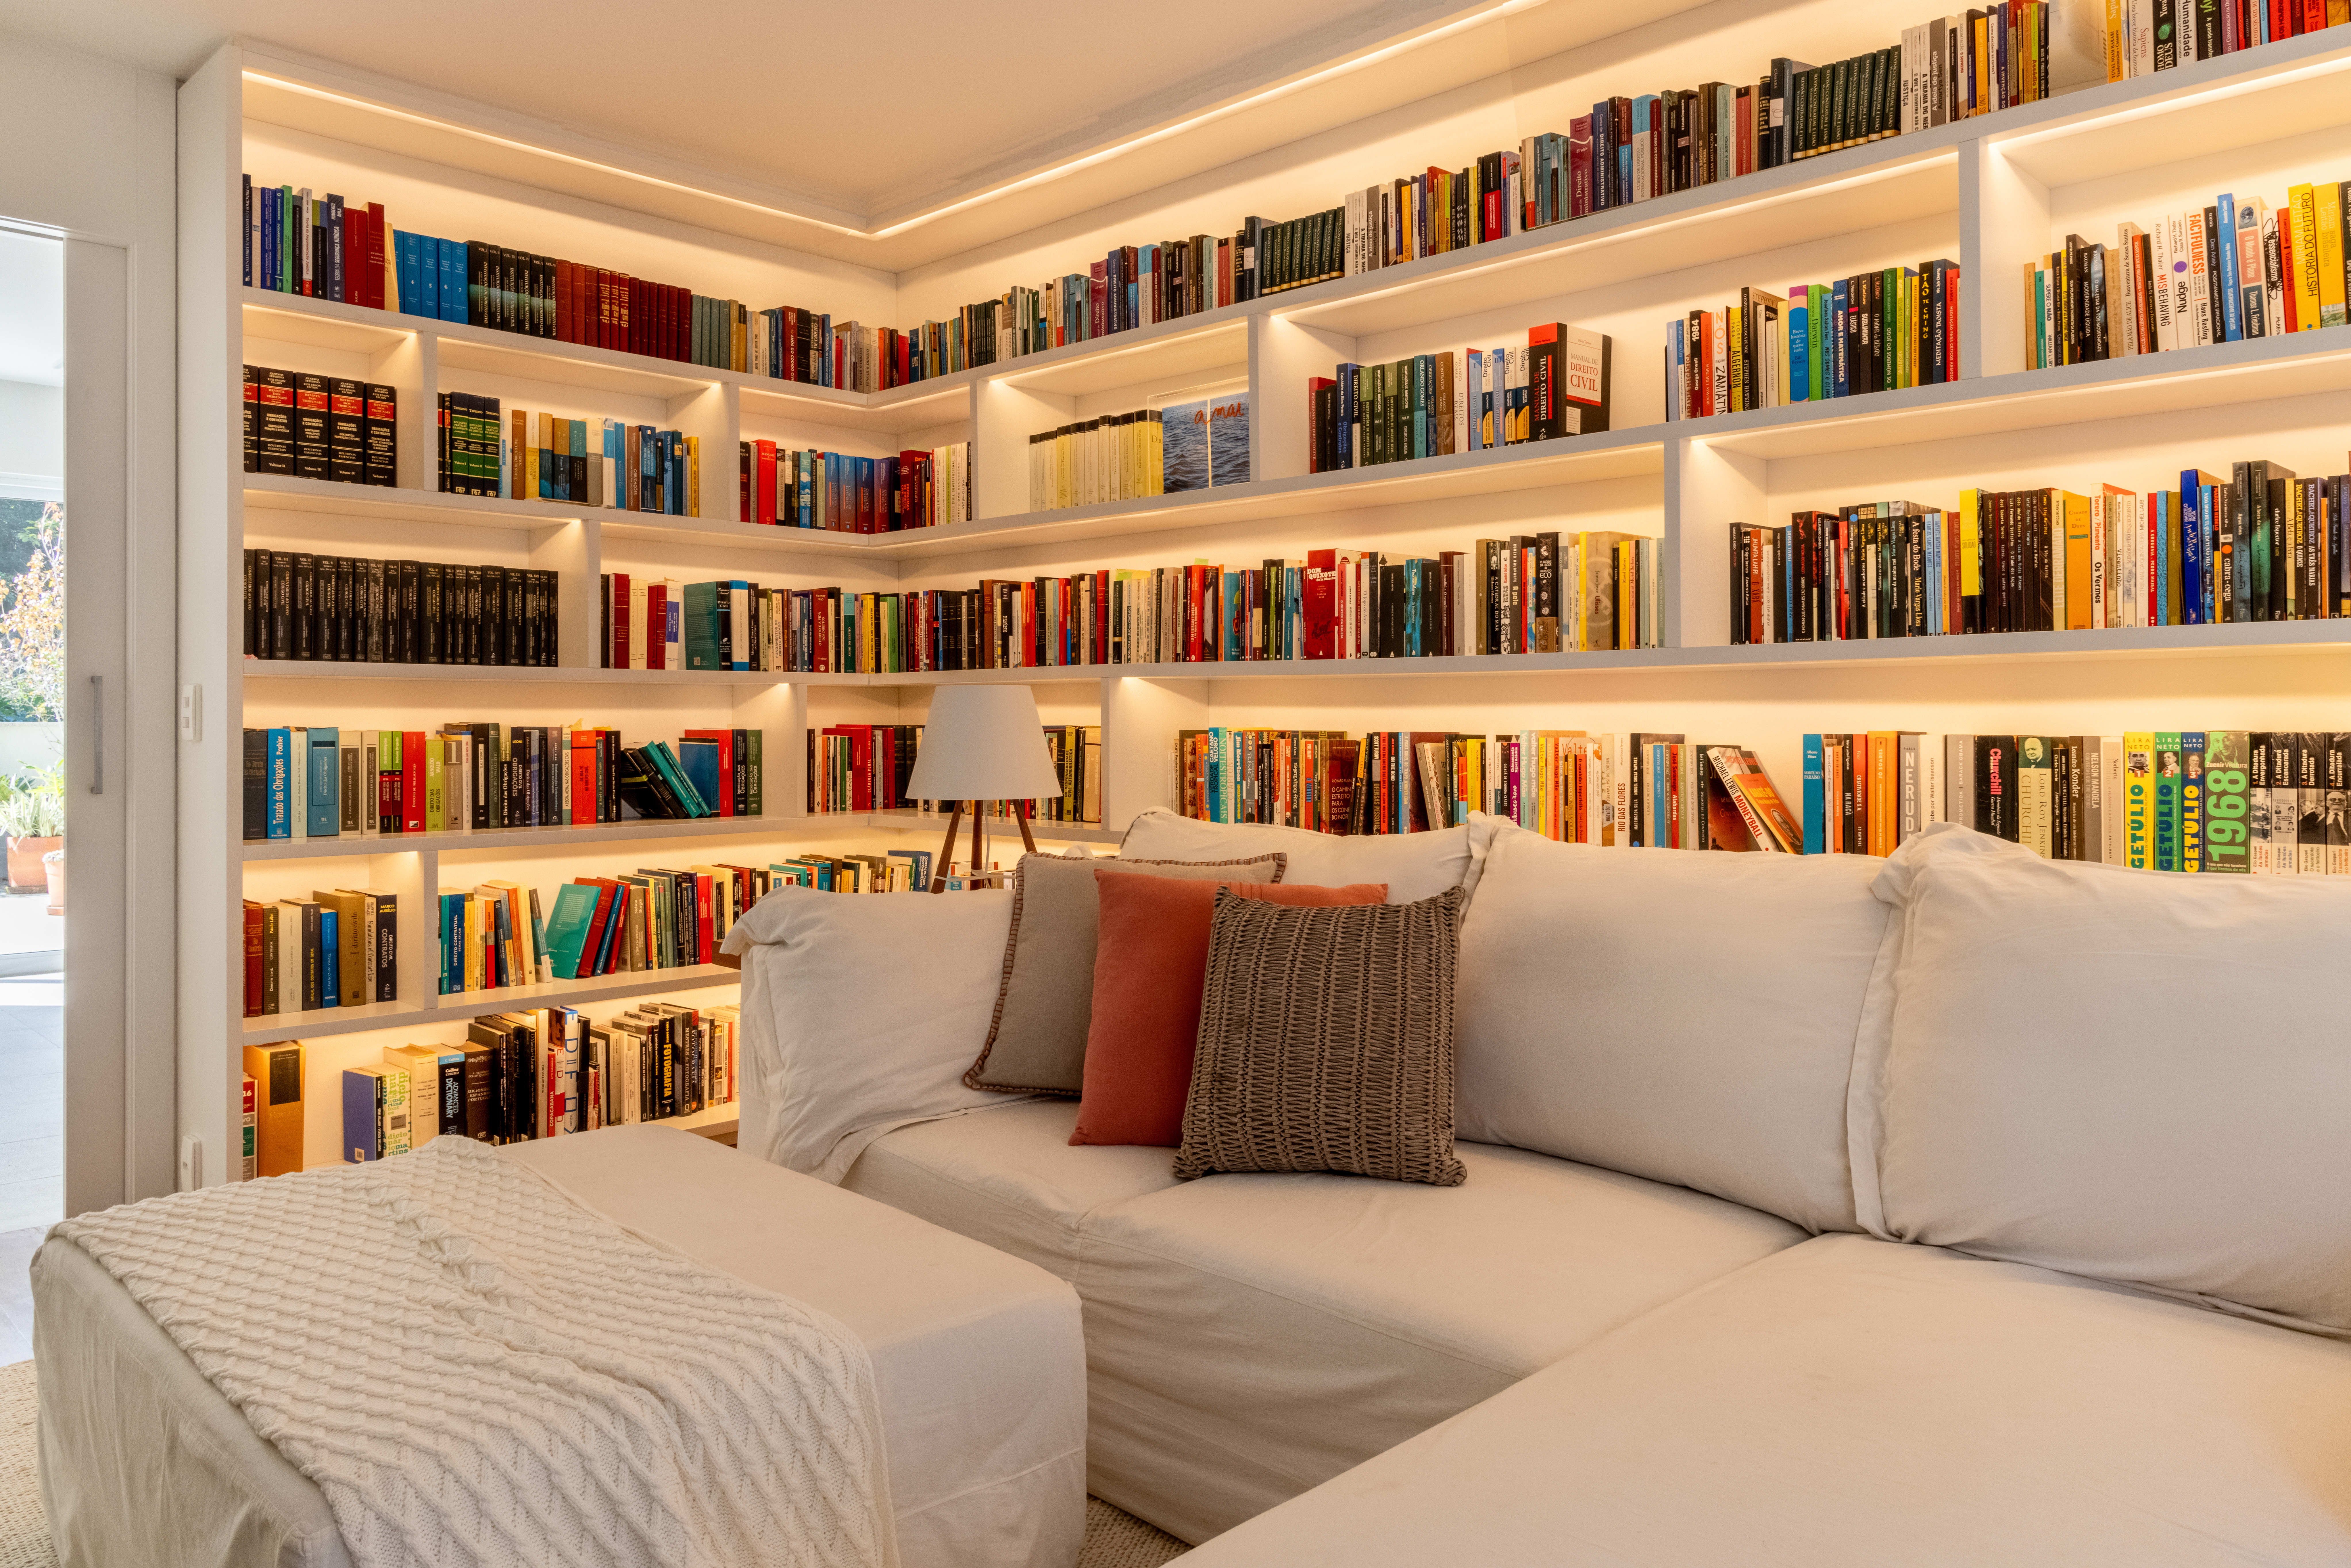 Projeto de Manuela Santos. Na foto, biblioteca com sofá branco L, estante retro iluminada com livros.